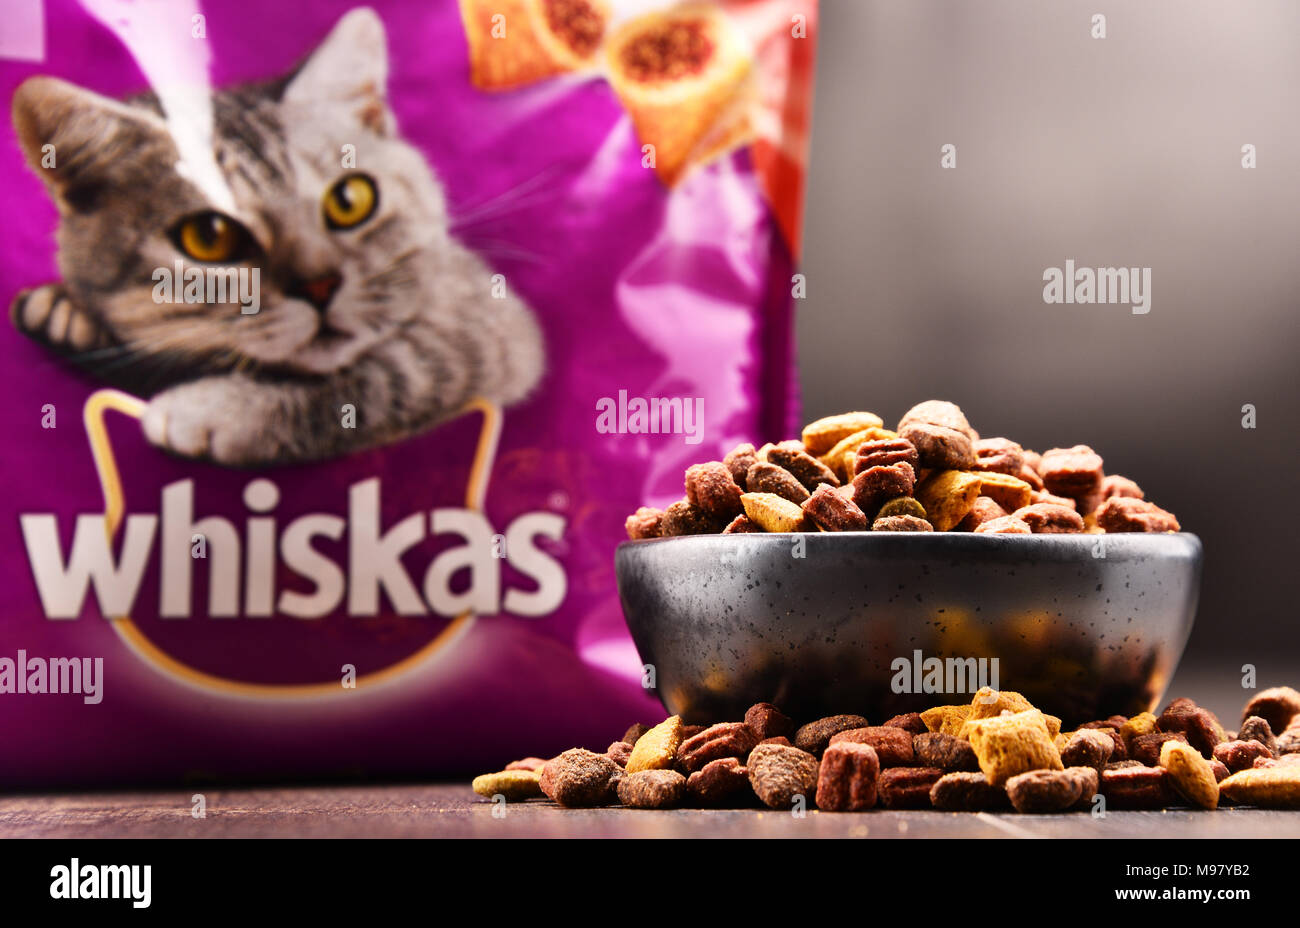 POZNAN, Polen - 21.Februar 2018: Produkte, globale Marke Whiskas  Katzenfutter von der amerikanischen Firma Mars, Inc., verfügbar als Fleisch  - wie Stücke produziert Stockfotografie - Alamy